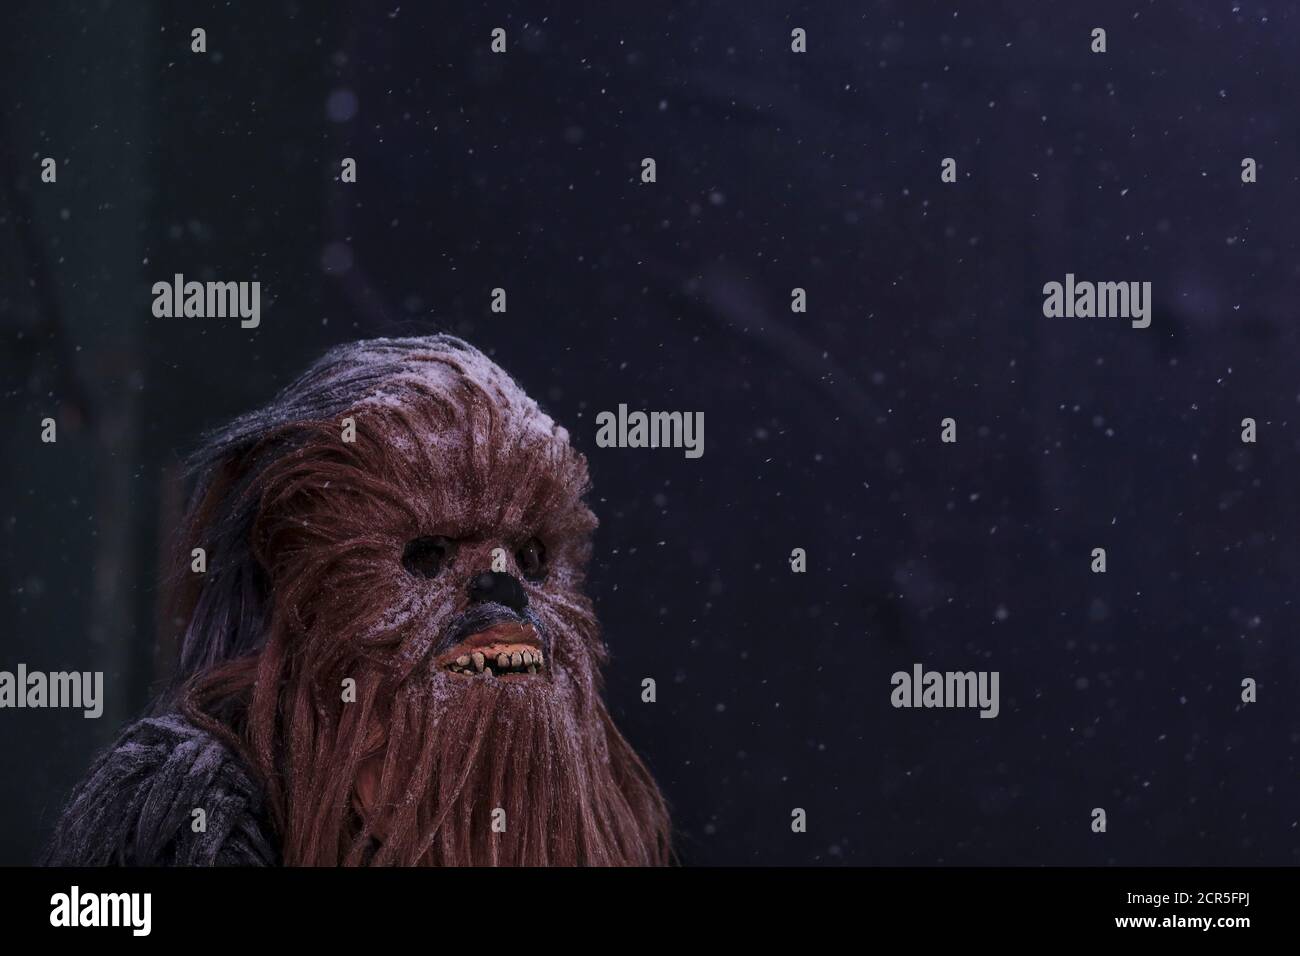 collar información freír Un hombre vestido como el personaje de Star Wars 'Chewbacca' se levanta  cuando comienza a nevar en Times Square en el barrio de Manhattan de Nueva  York, 22 de enero de 2016.